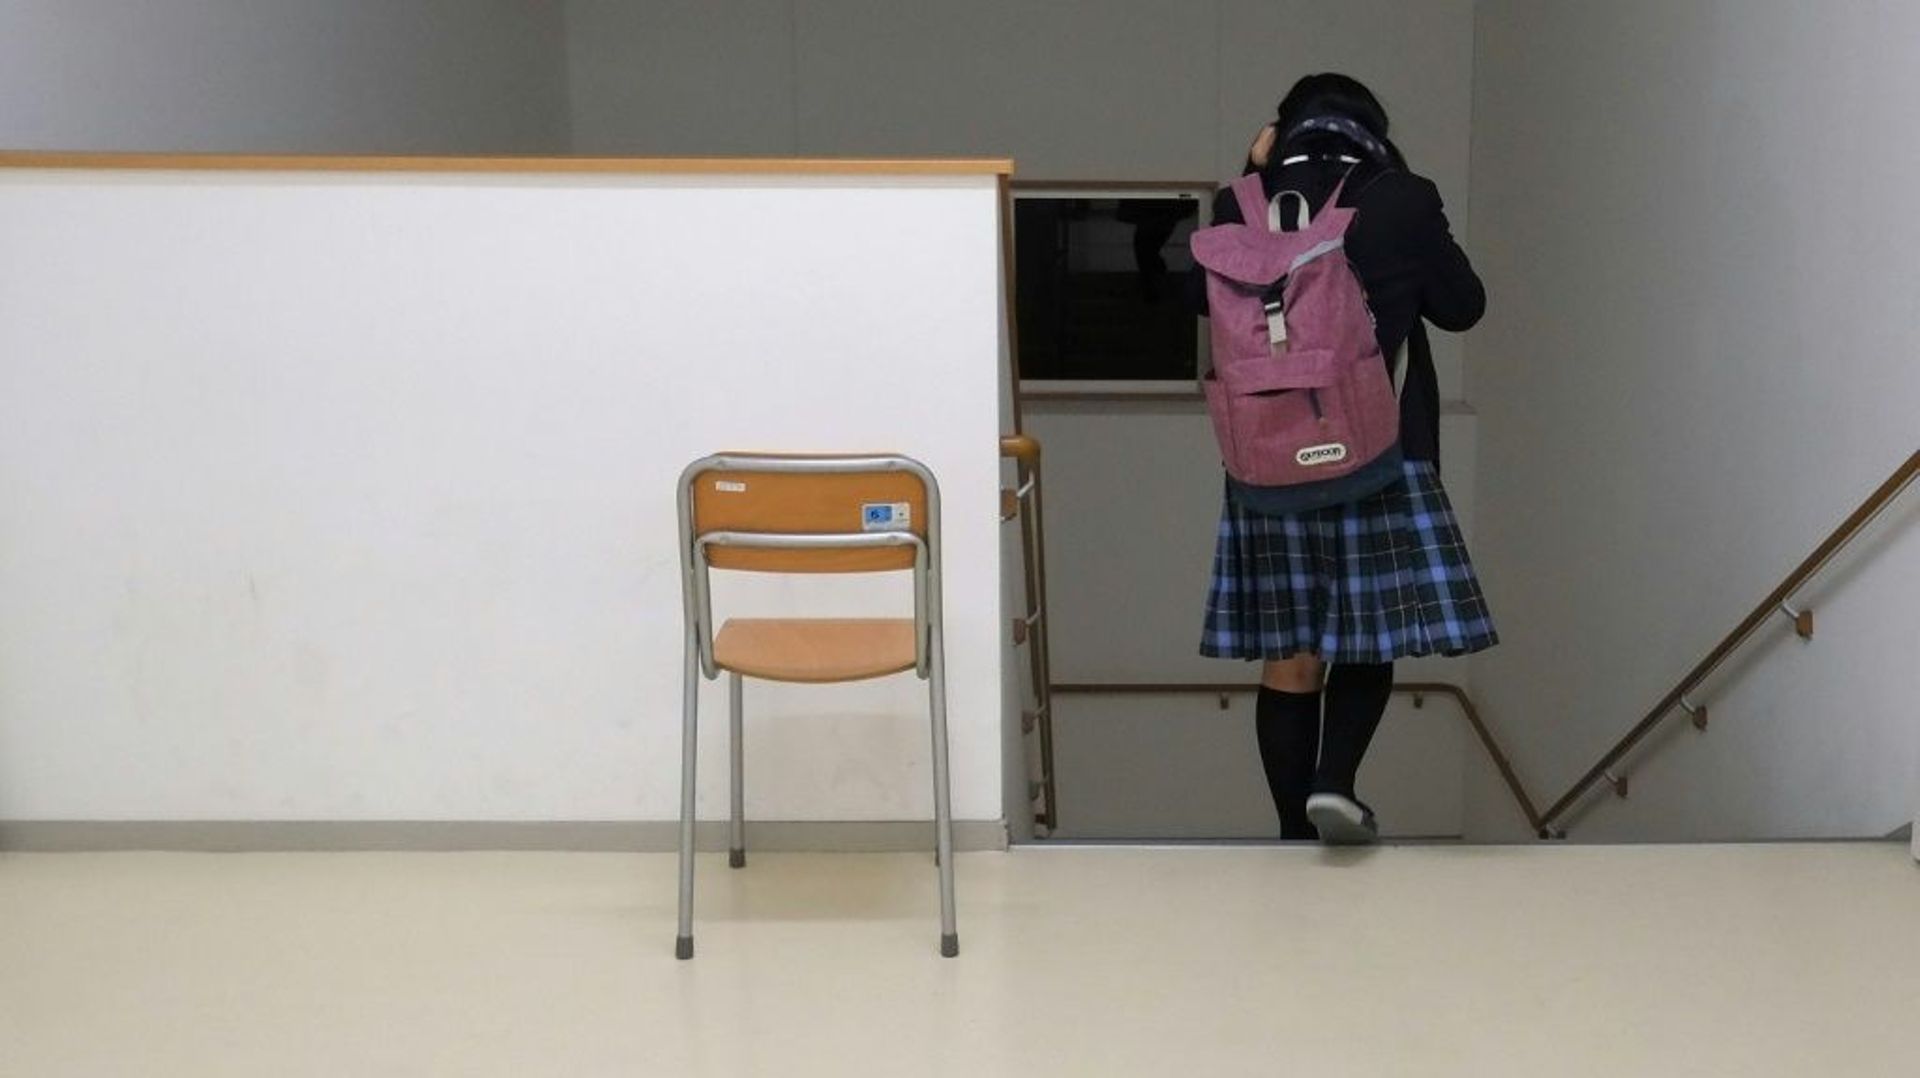 Le jour de la rentrée scolaire, le nombre de suicides chez les enfants atteint un pic au Japon